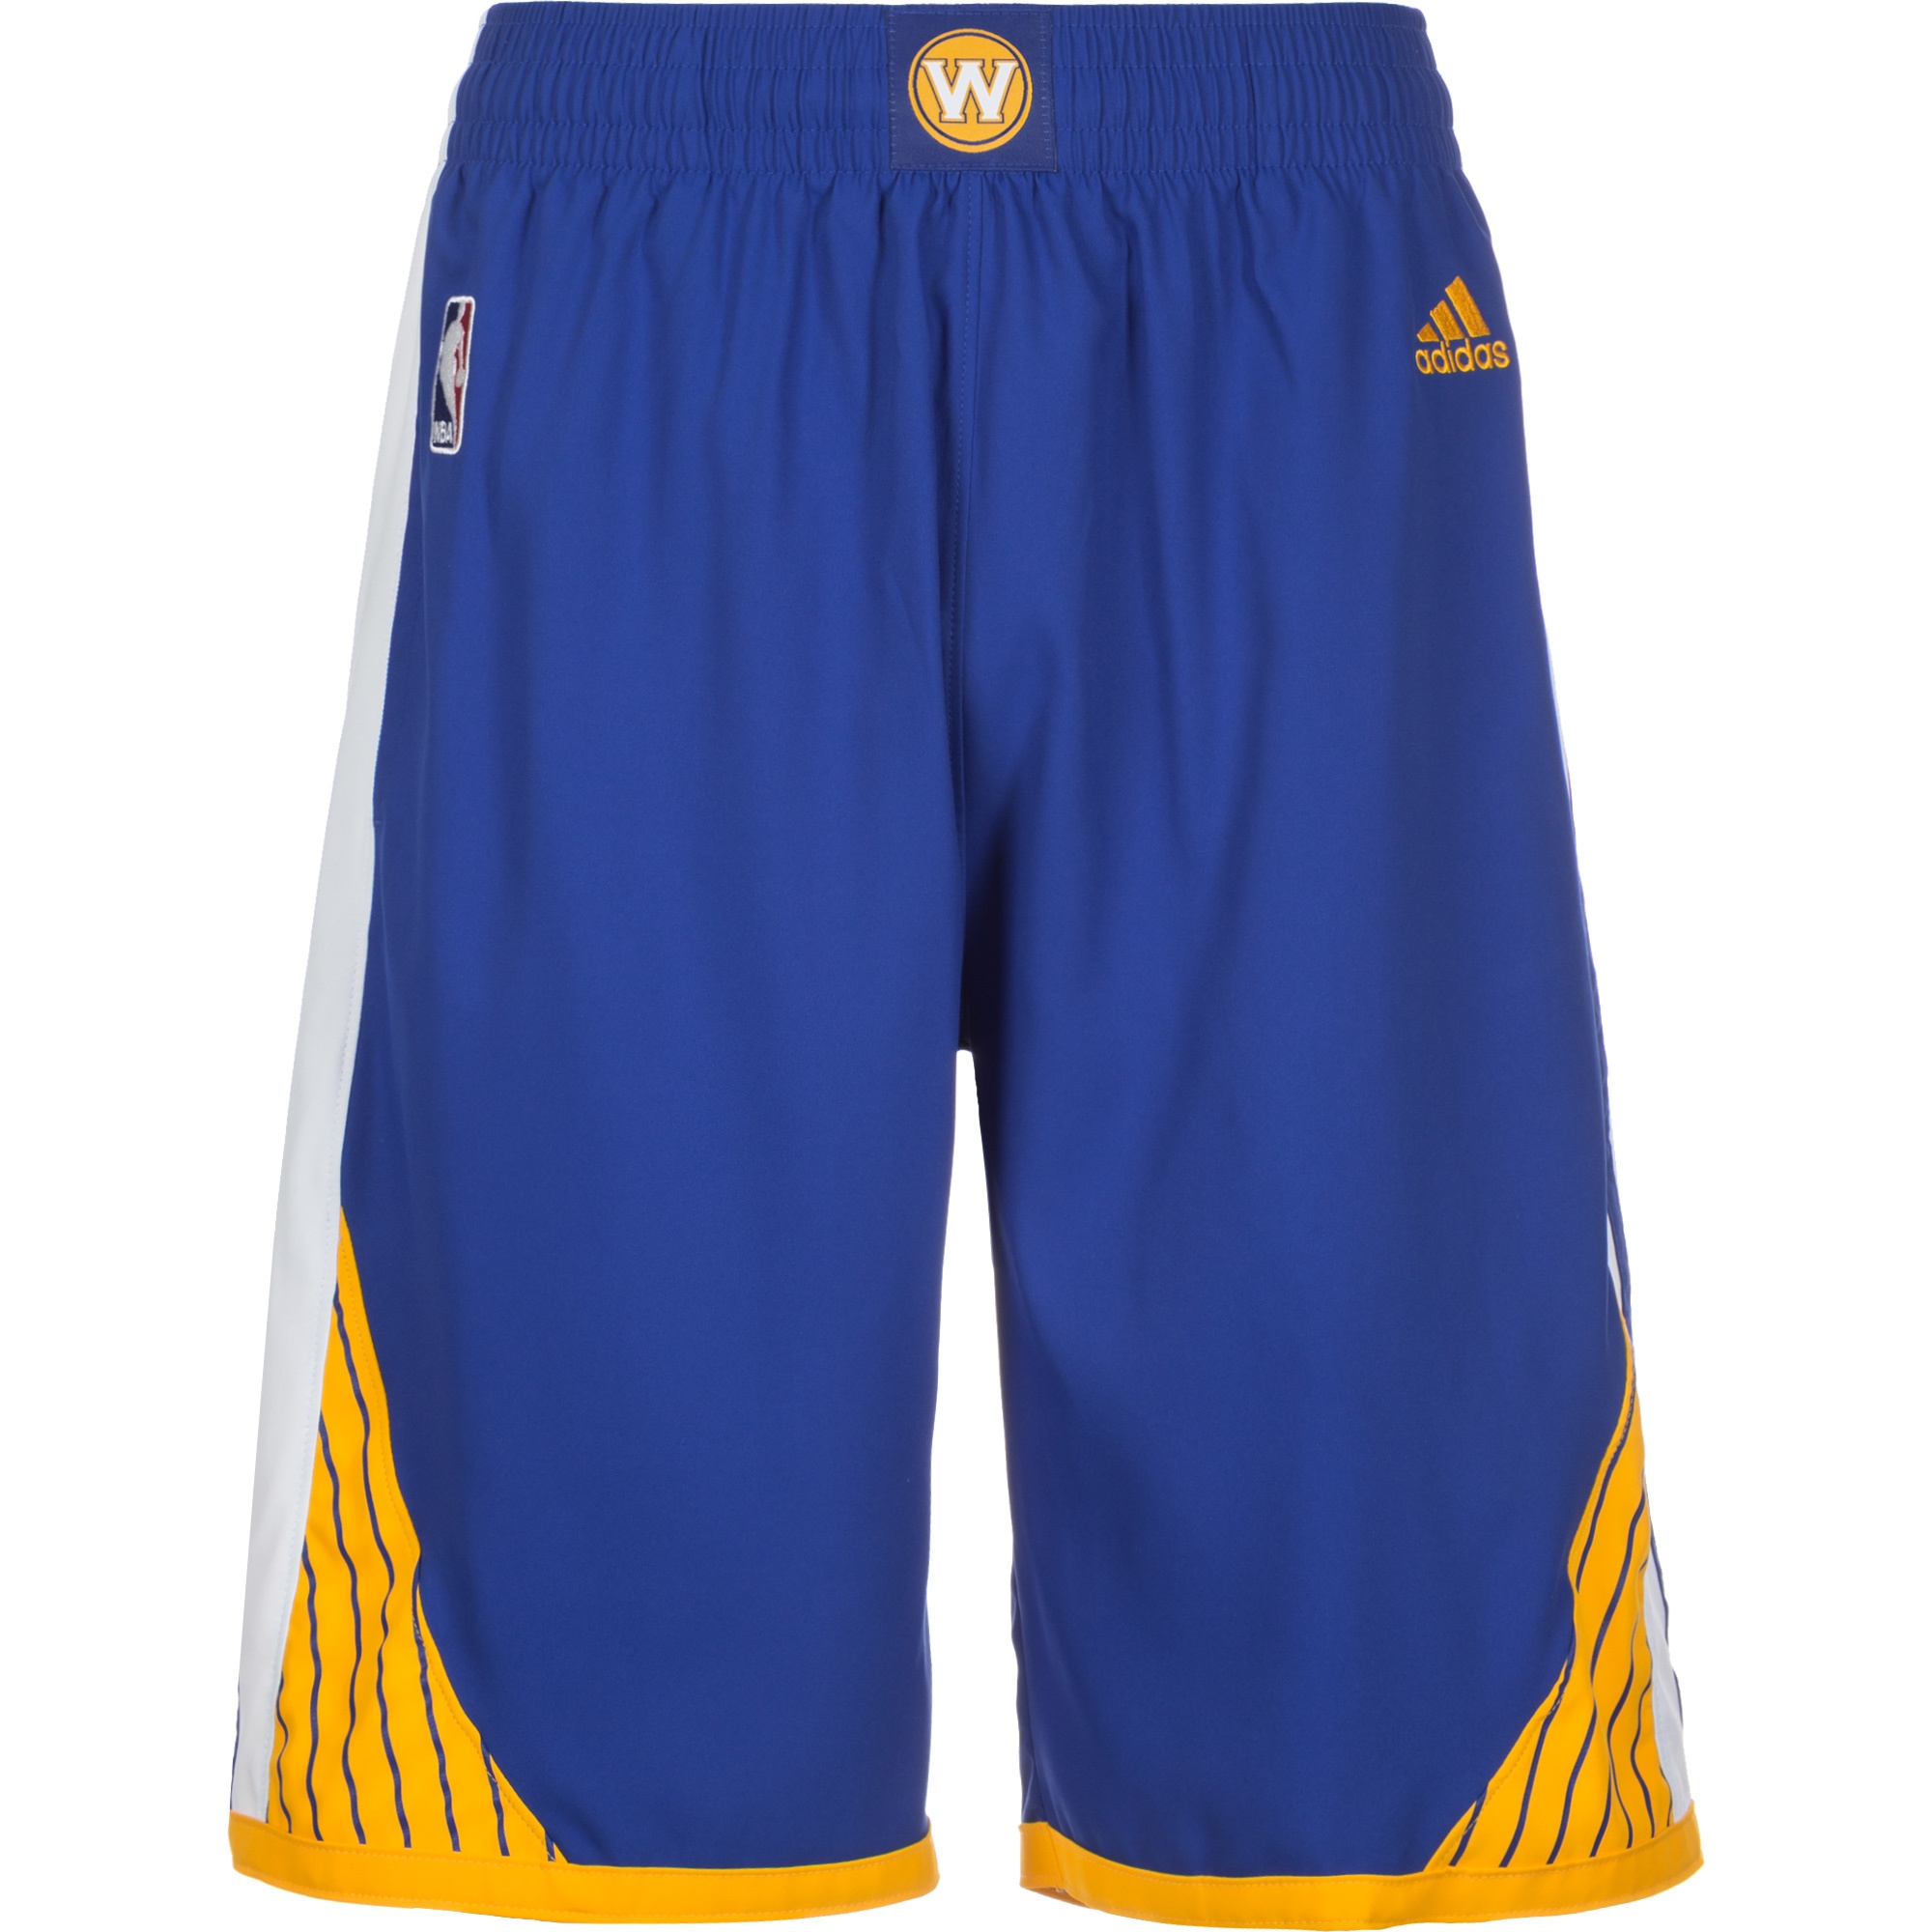 Adidas NBA Short Golden State Warriors